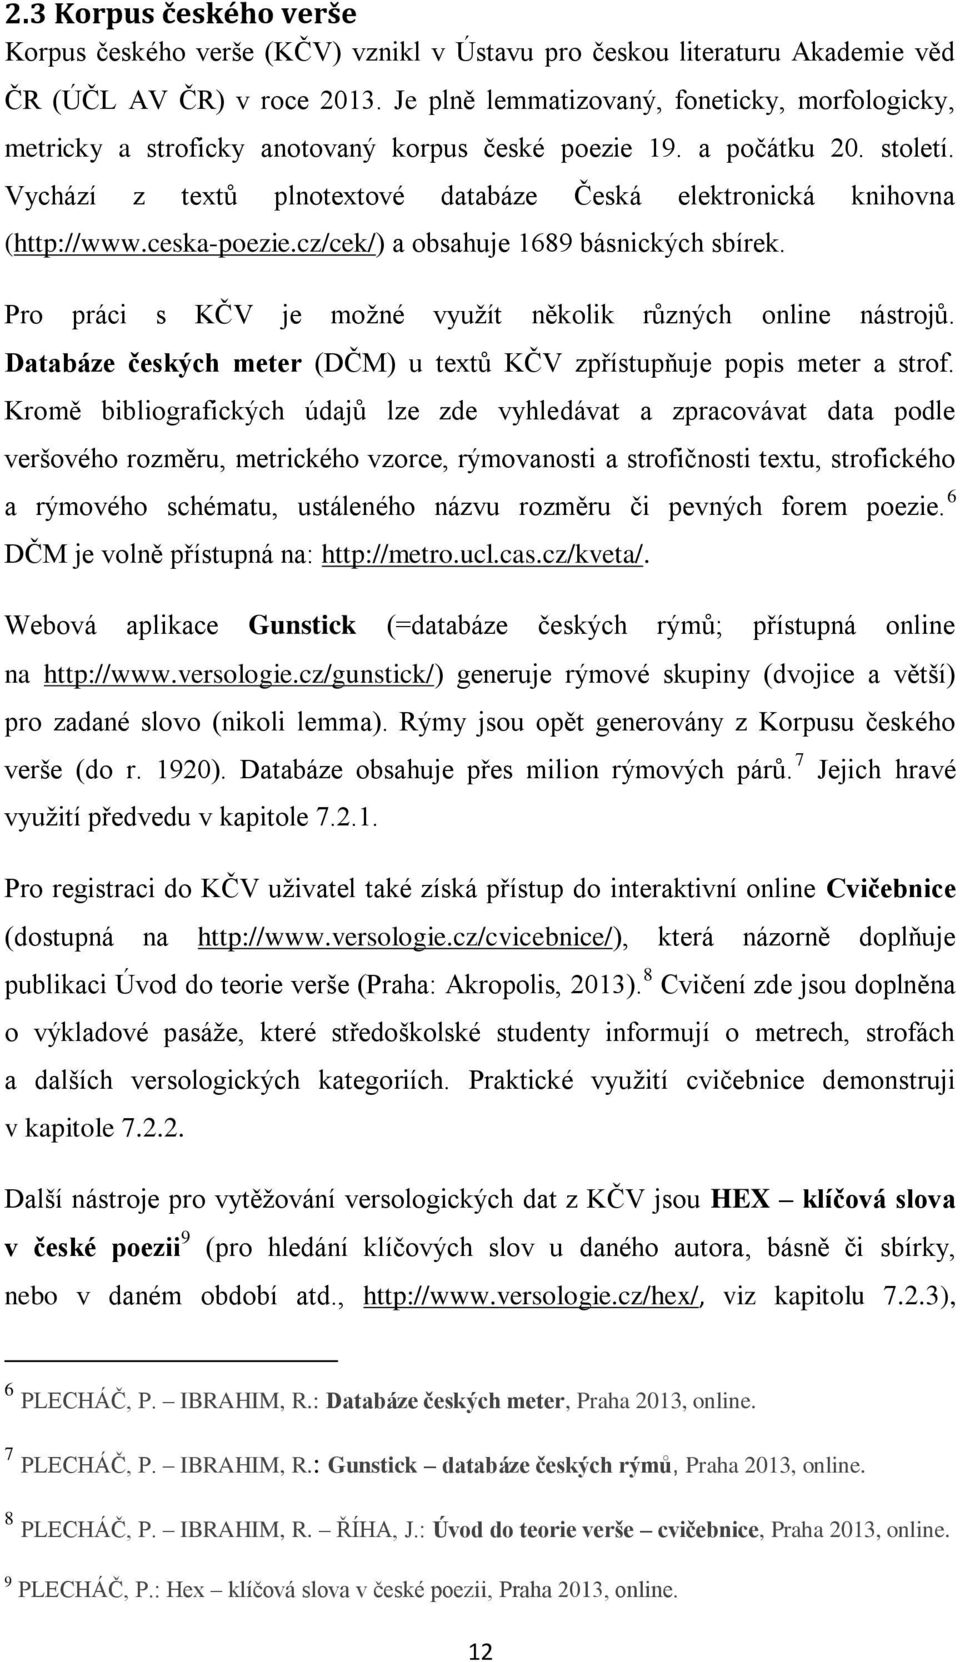 Vychází z textů plnotextové databáze Česká elektronická knihovna (http://www.ceska-poezie.cz/cek/) a obsahuje 1689 básnických sbírek. Pro práci s KČV je možné využít několik různých online nástrojů.